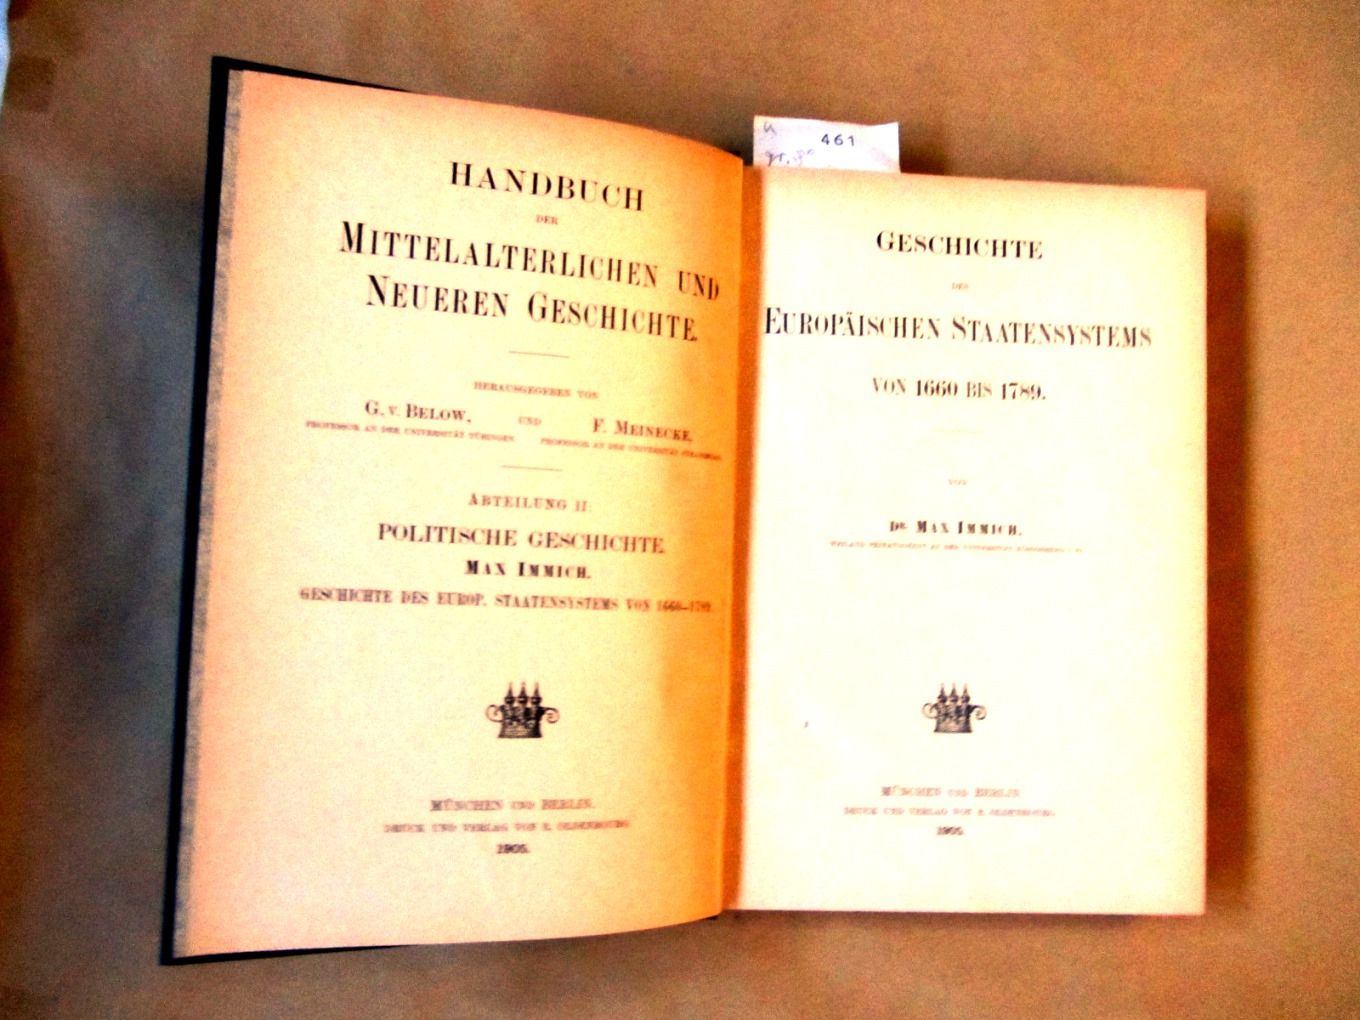 Immich, Max:  Geschichte des europäischen Staatensystems von 1660 bis 1789. ("Handbuch der mittelalterlichen und neueren Geschichte". Abteilung II: Politische Geschichte) 